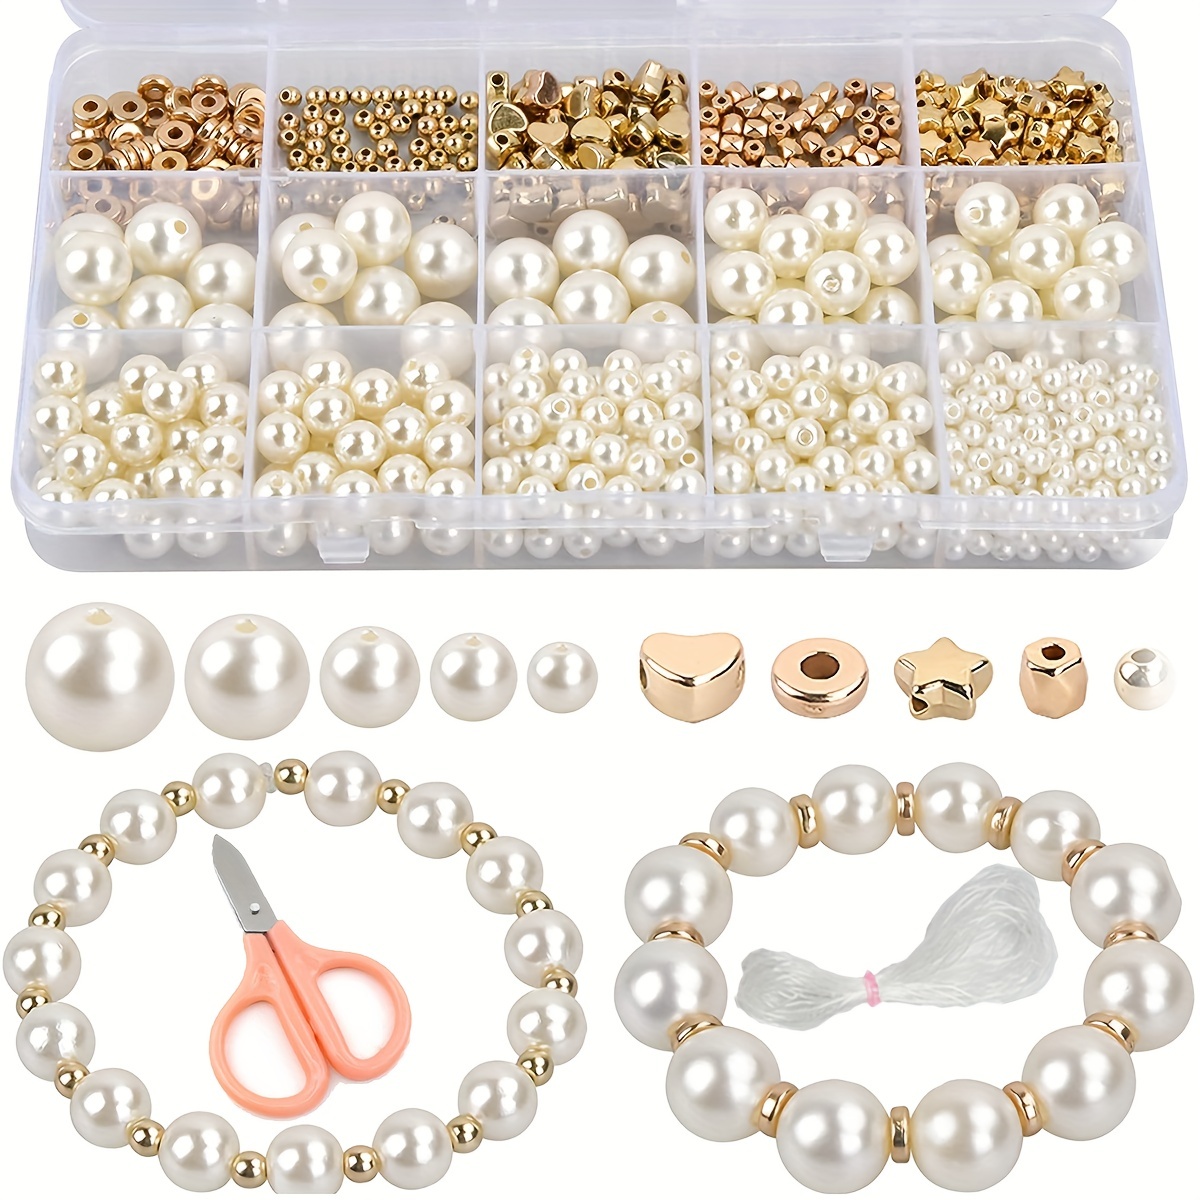 Boho Style DIY Clay Beads Bracelet Kit Friendship Bracelet Making Kit For  Women Golden Letter Beads Pink White Clay Beads Kit For DIY Jewelry Making